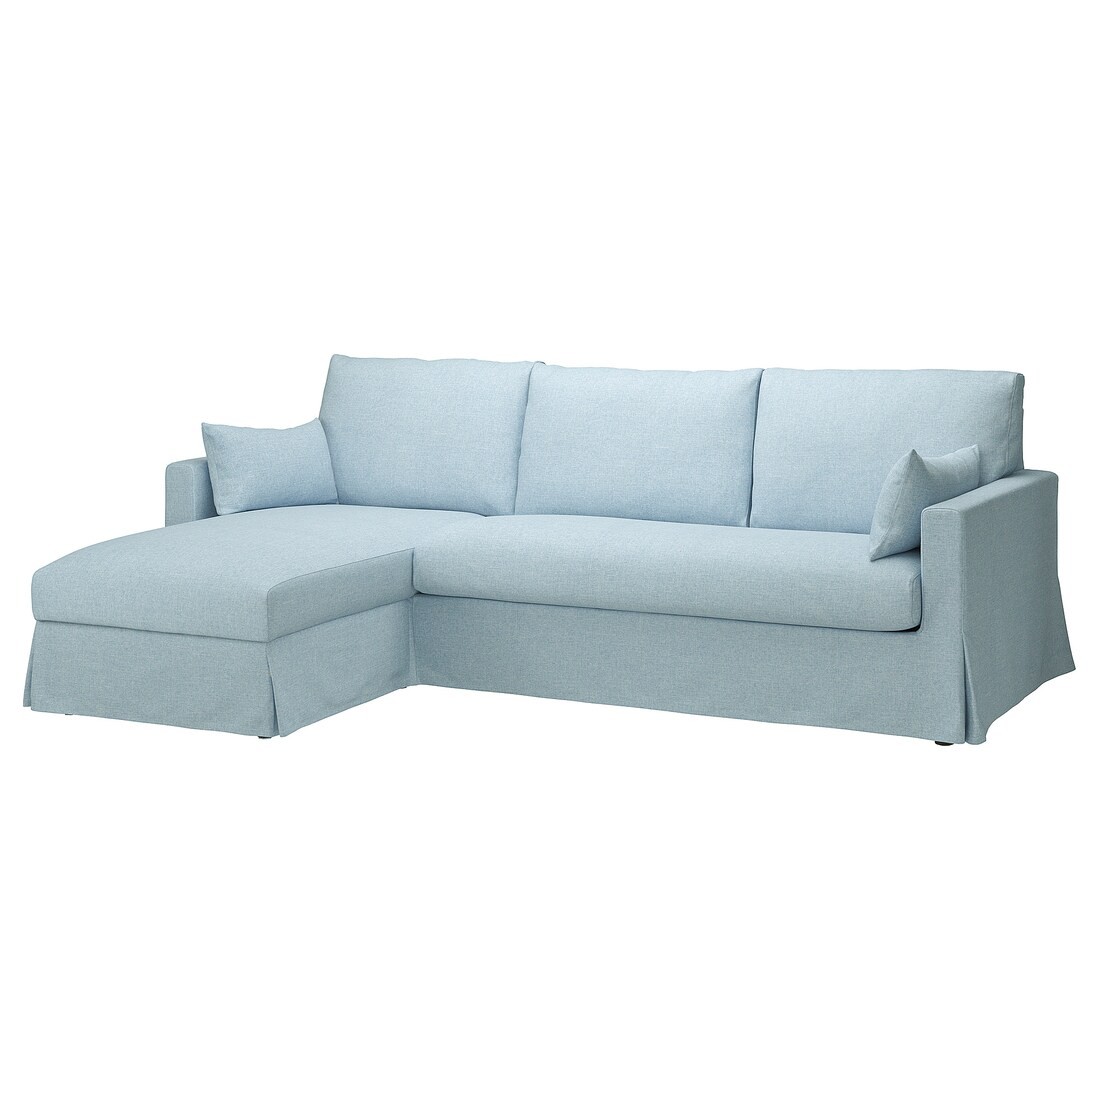 HYLTARP 3-х местный диван с козеткой, левый, Киланда бледно-голубой